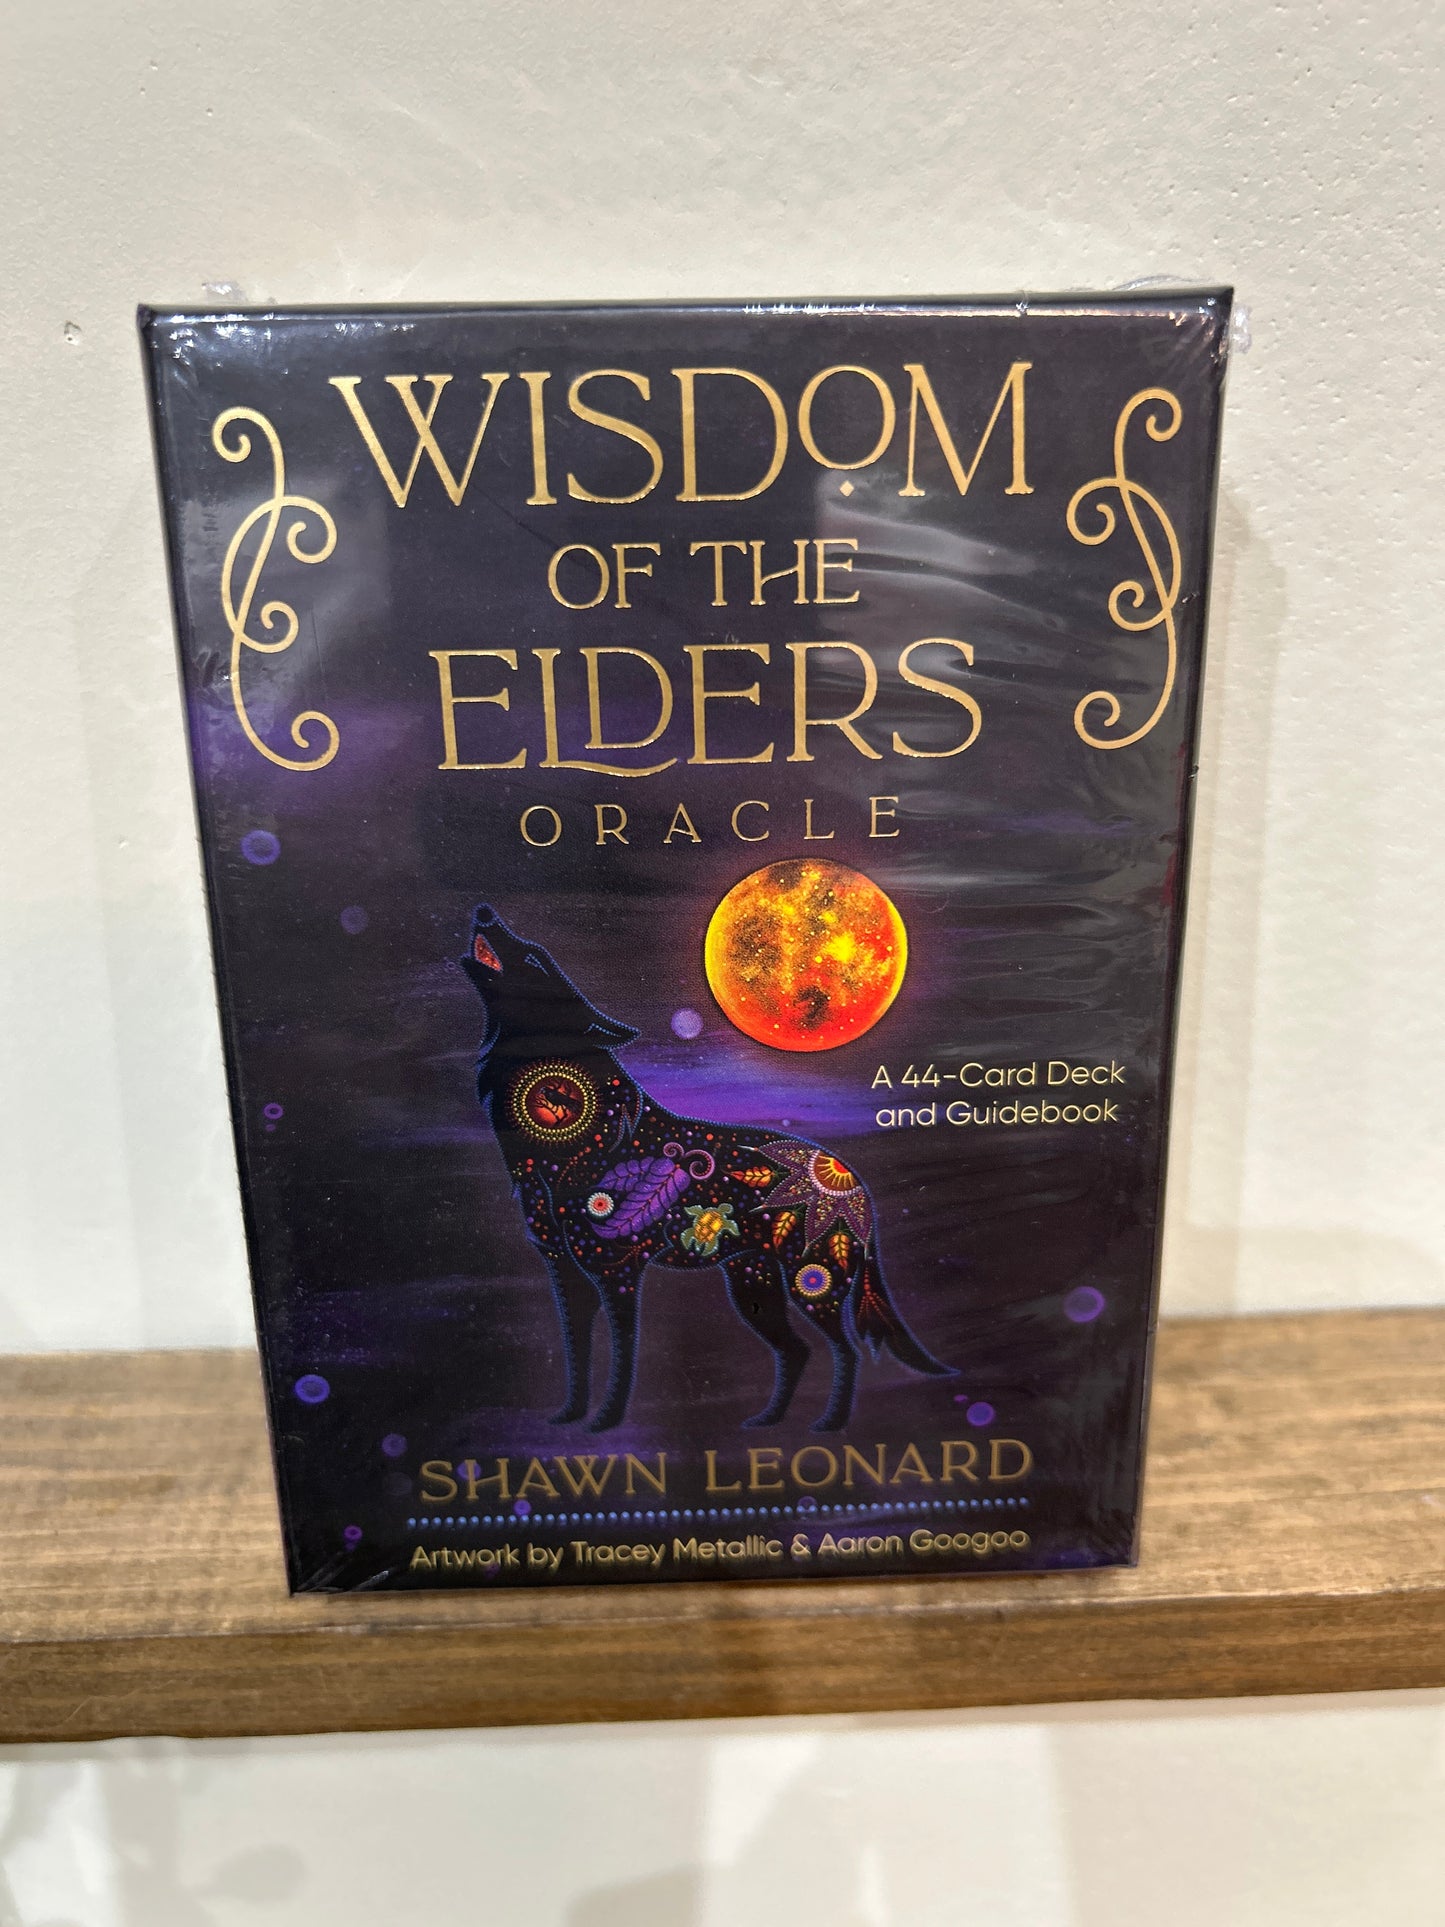 Wisdom of the elders by Shawn Leonard